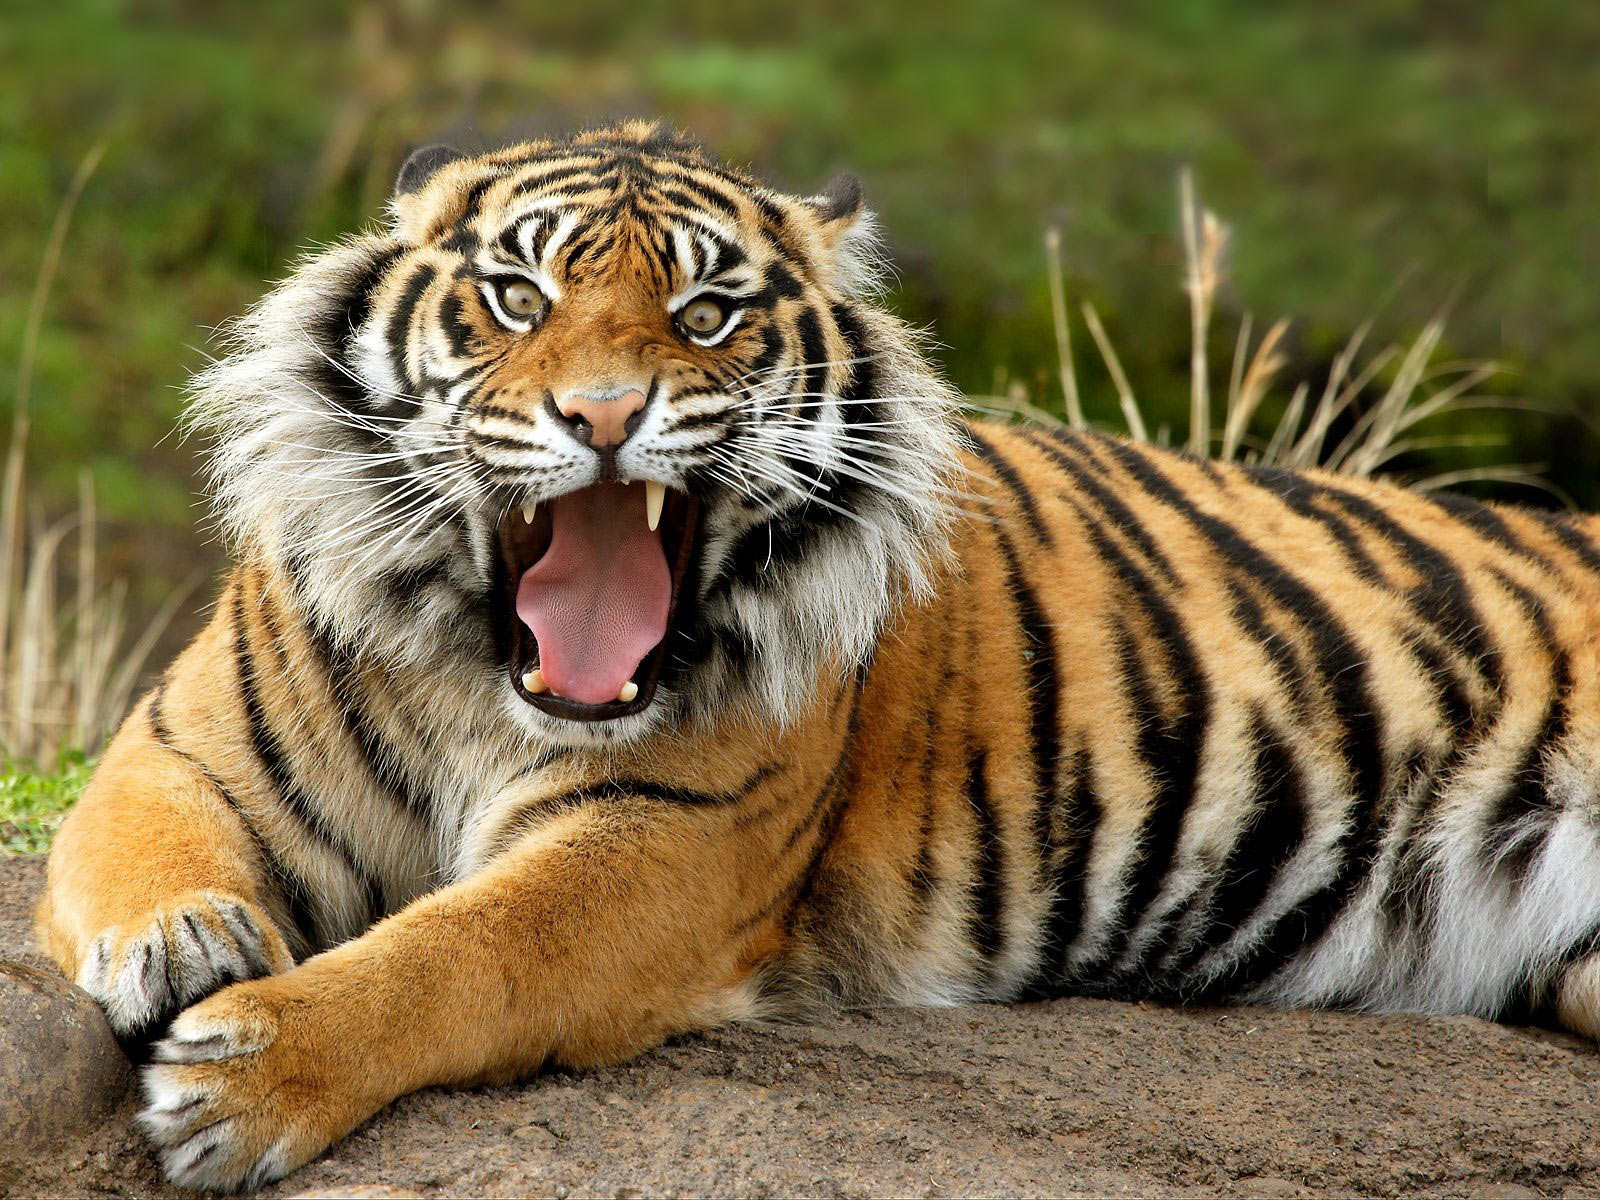 Tiger banner